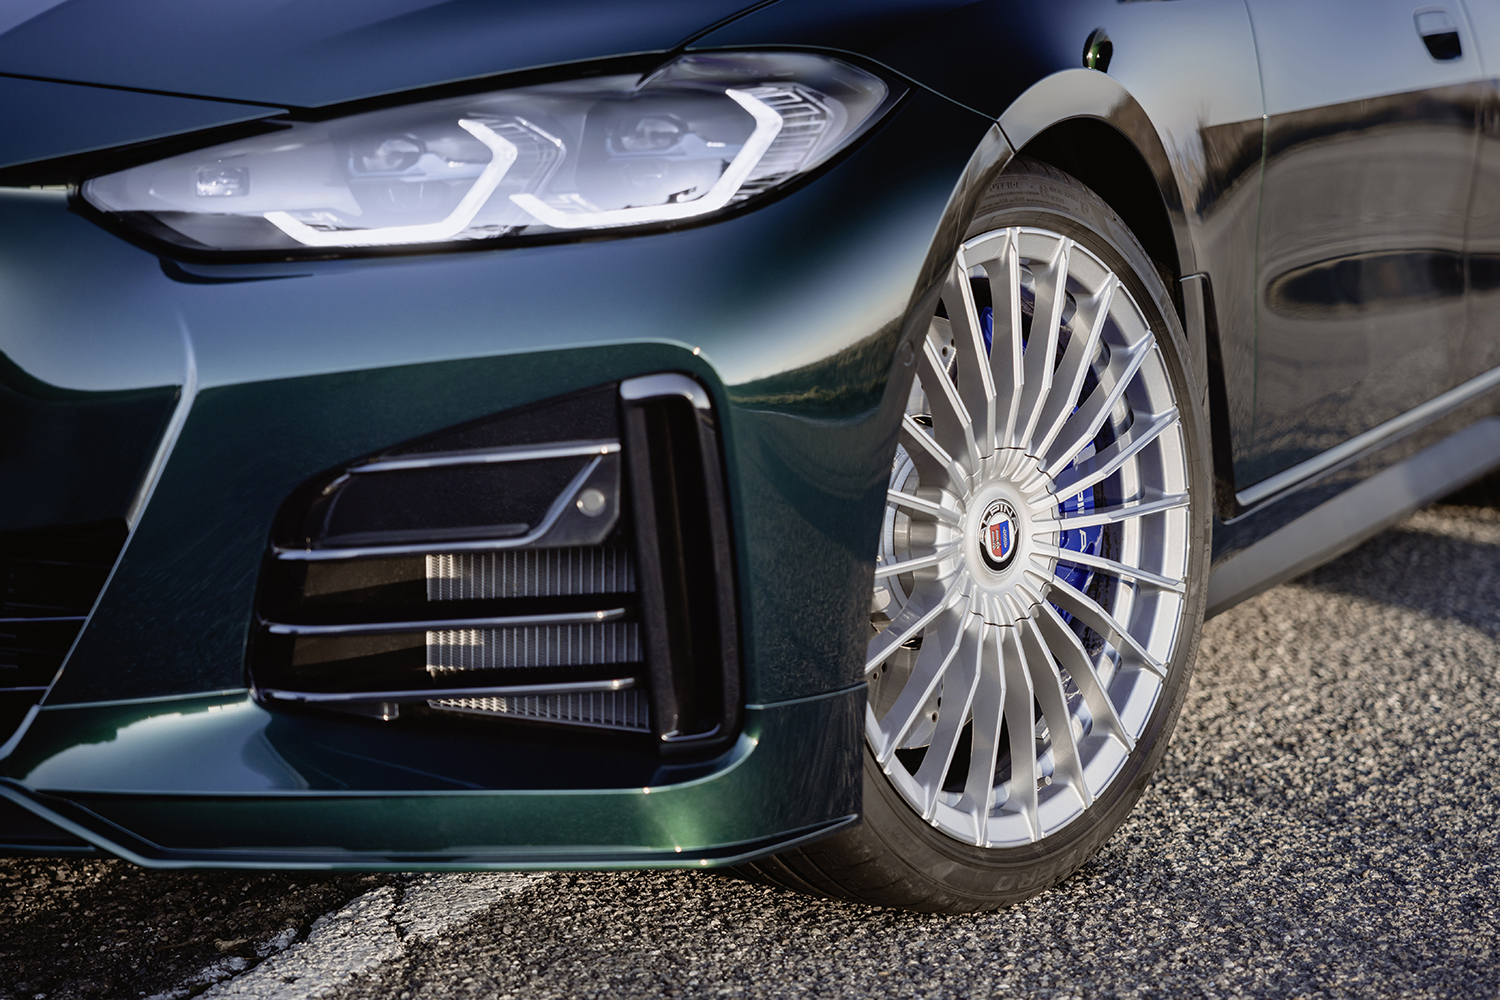 BMWアルピナ D4 S グランクーペのタイヤとホイールの写真 〜 画像23